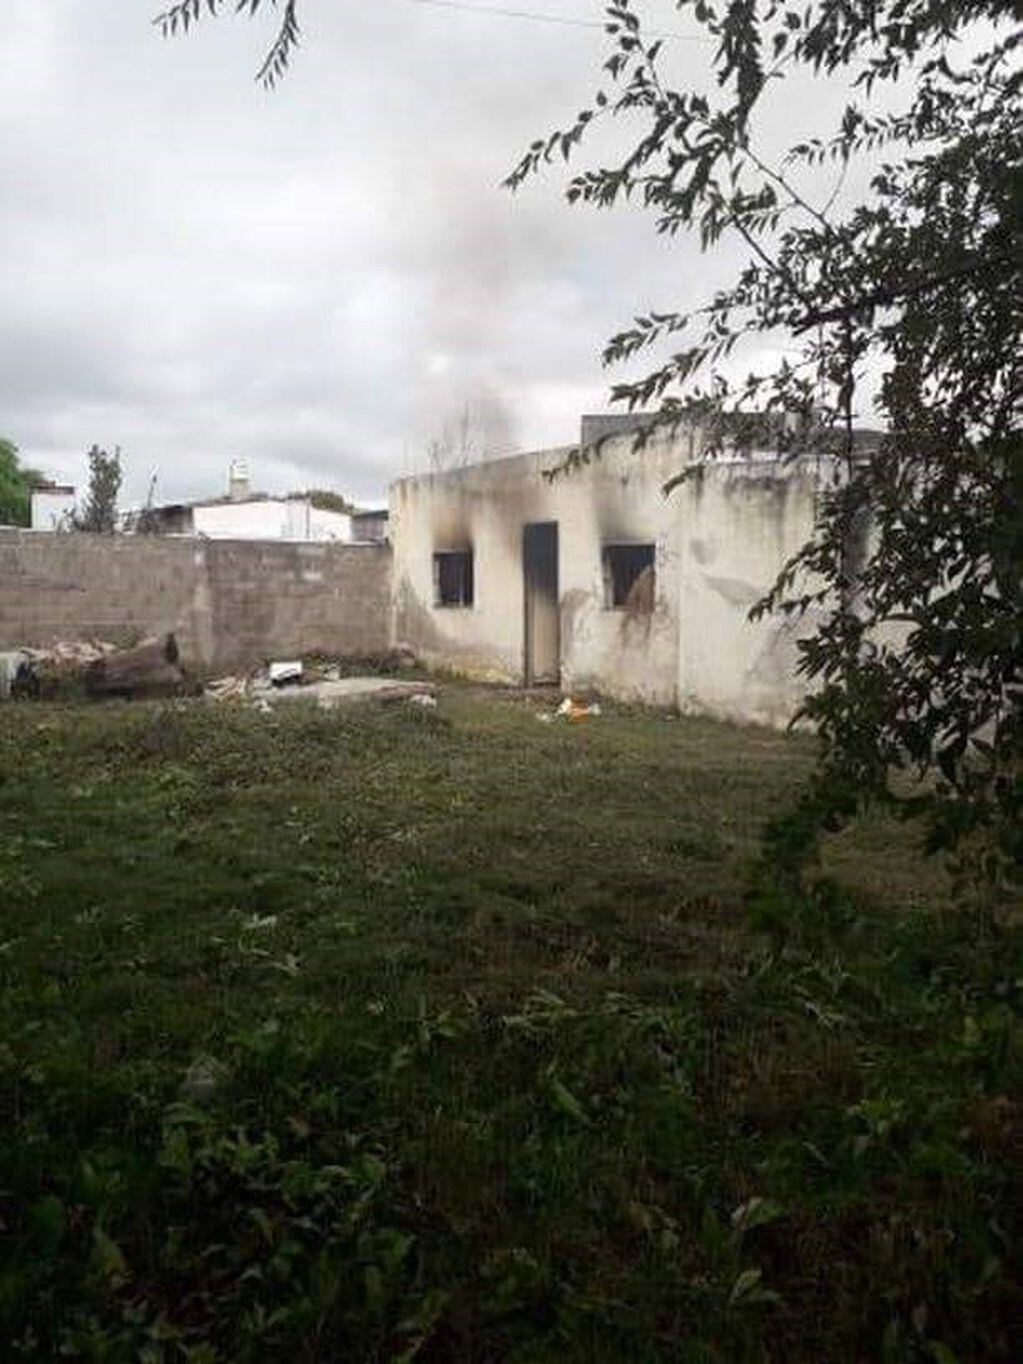 La vivienda se encontraba abandonada al momento del incendio (Foto Radio Cadena Norte).